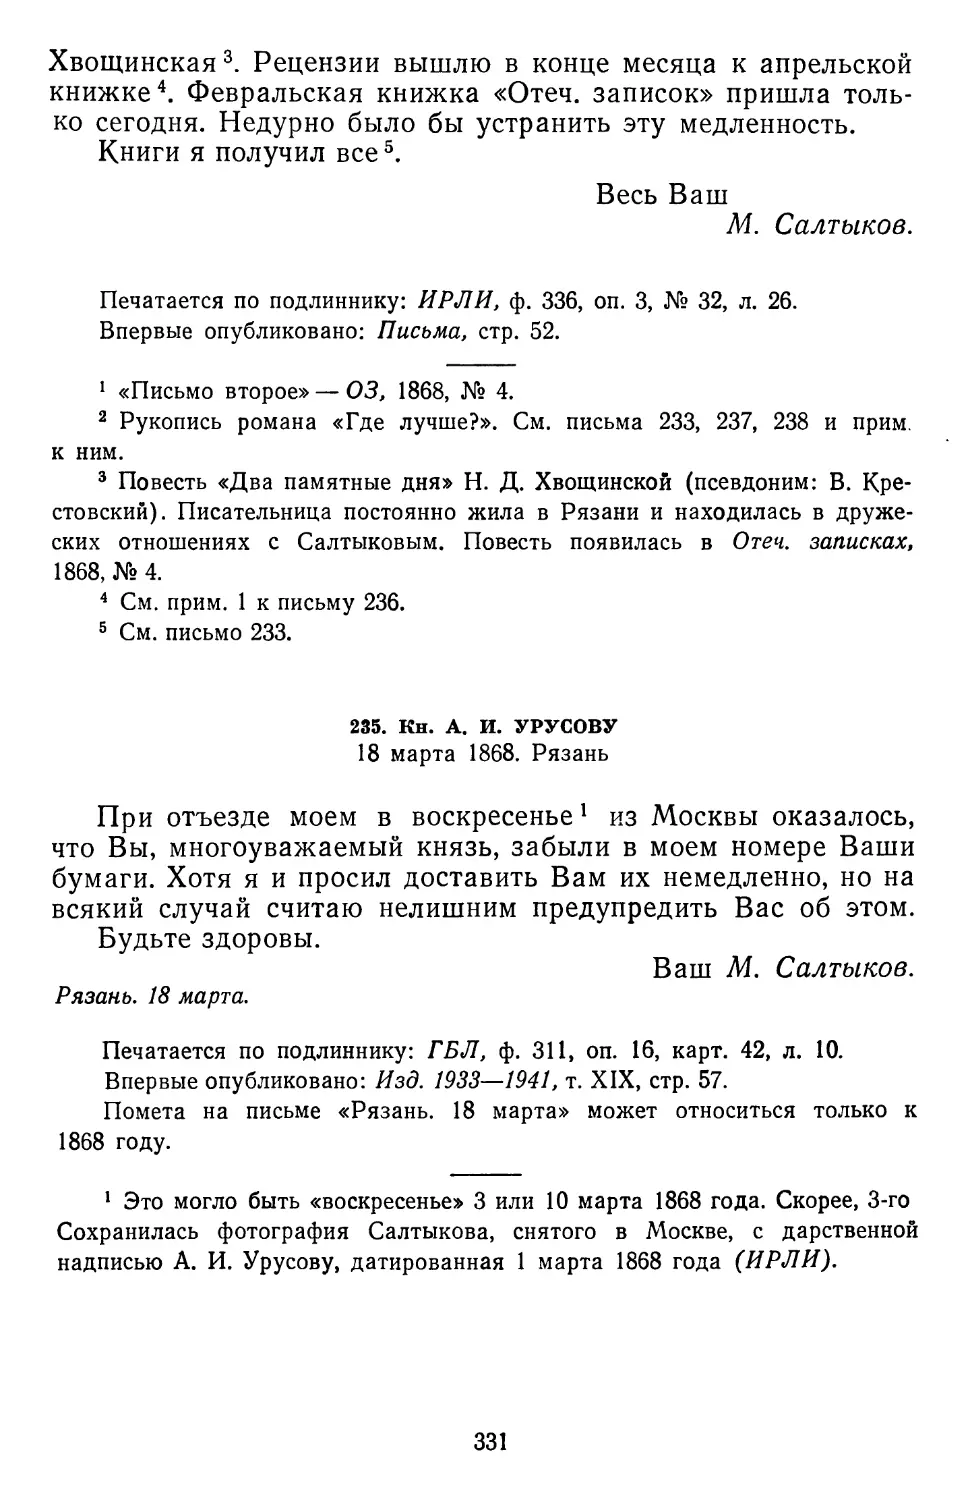 235.А.И.Урусову. 18 марта 1868. Рязань